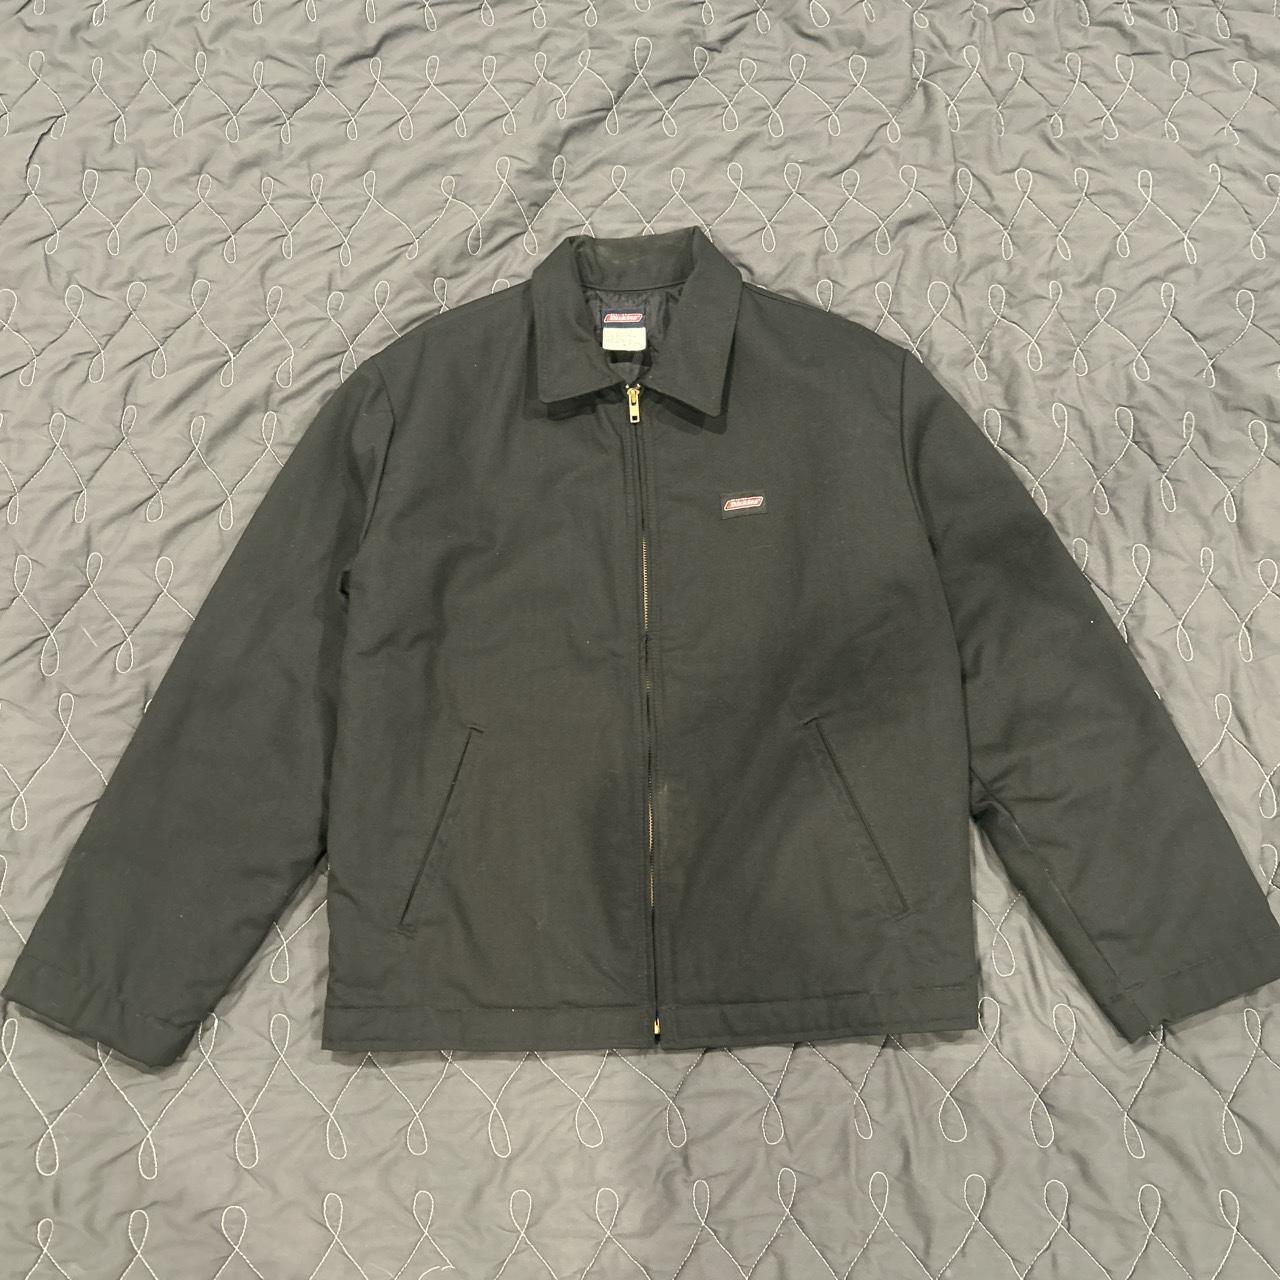 Vintage dickies work jacket Size Men’s medium Great... - Depop